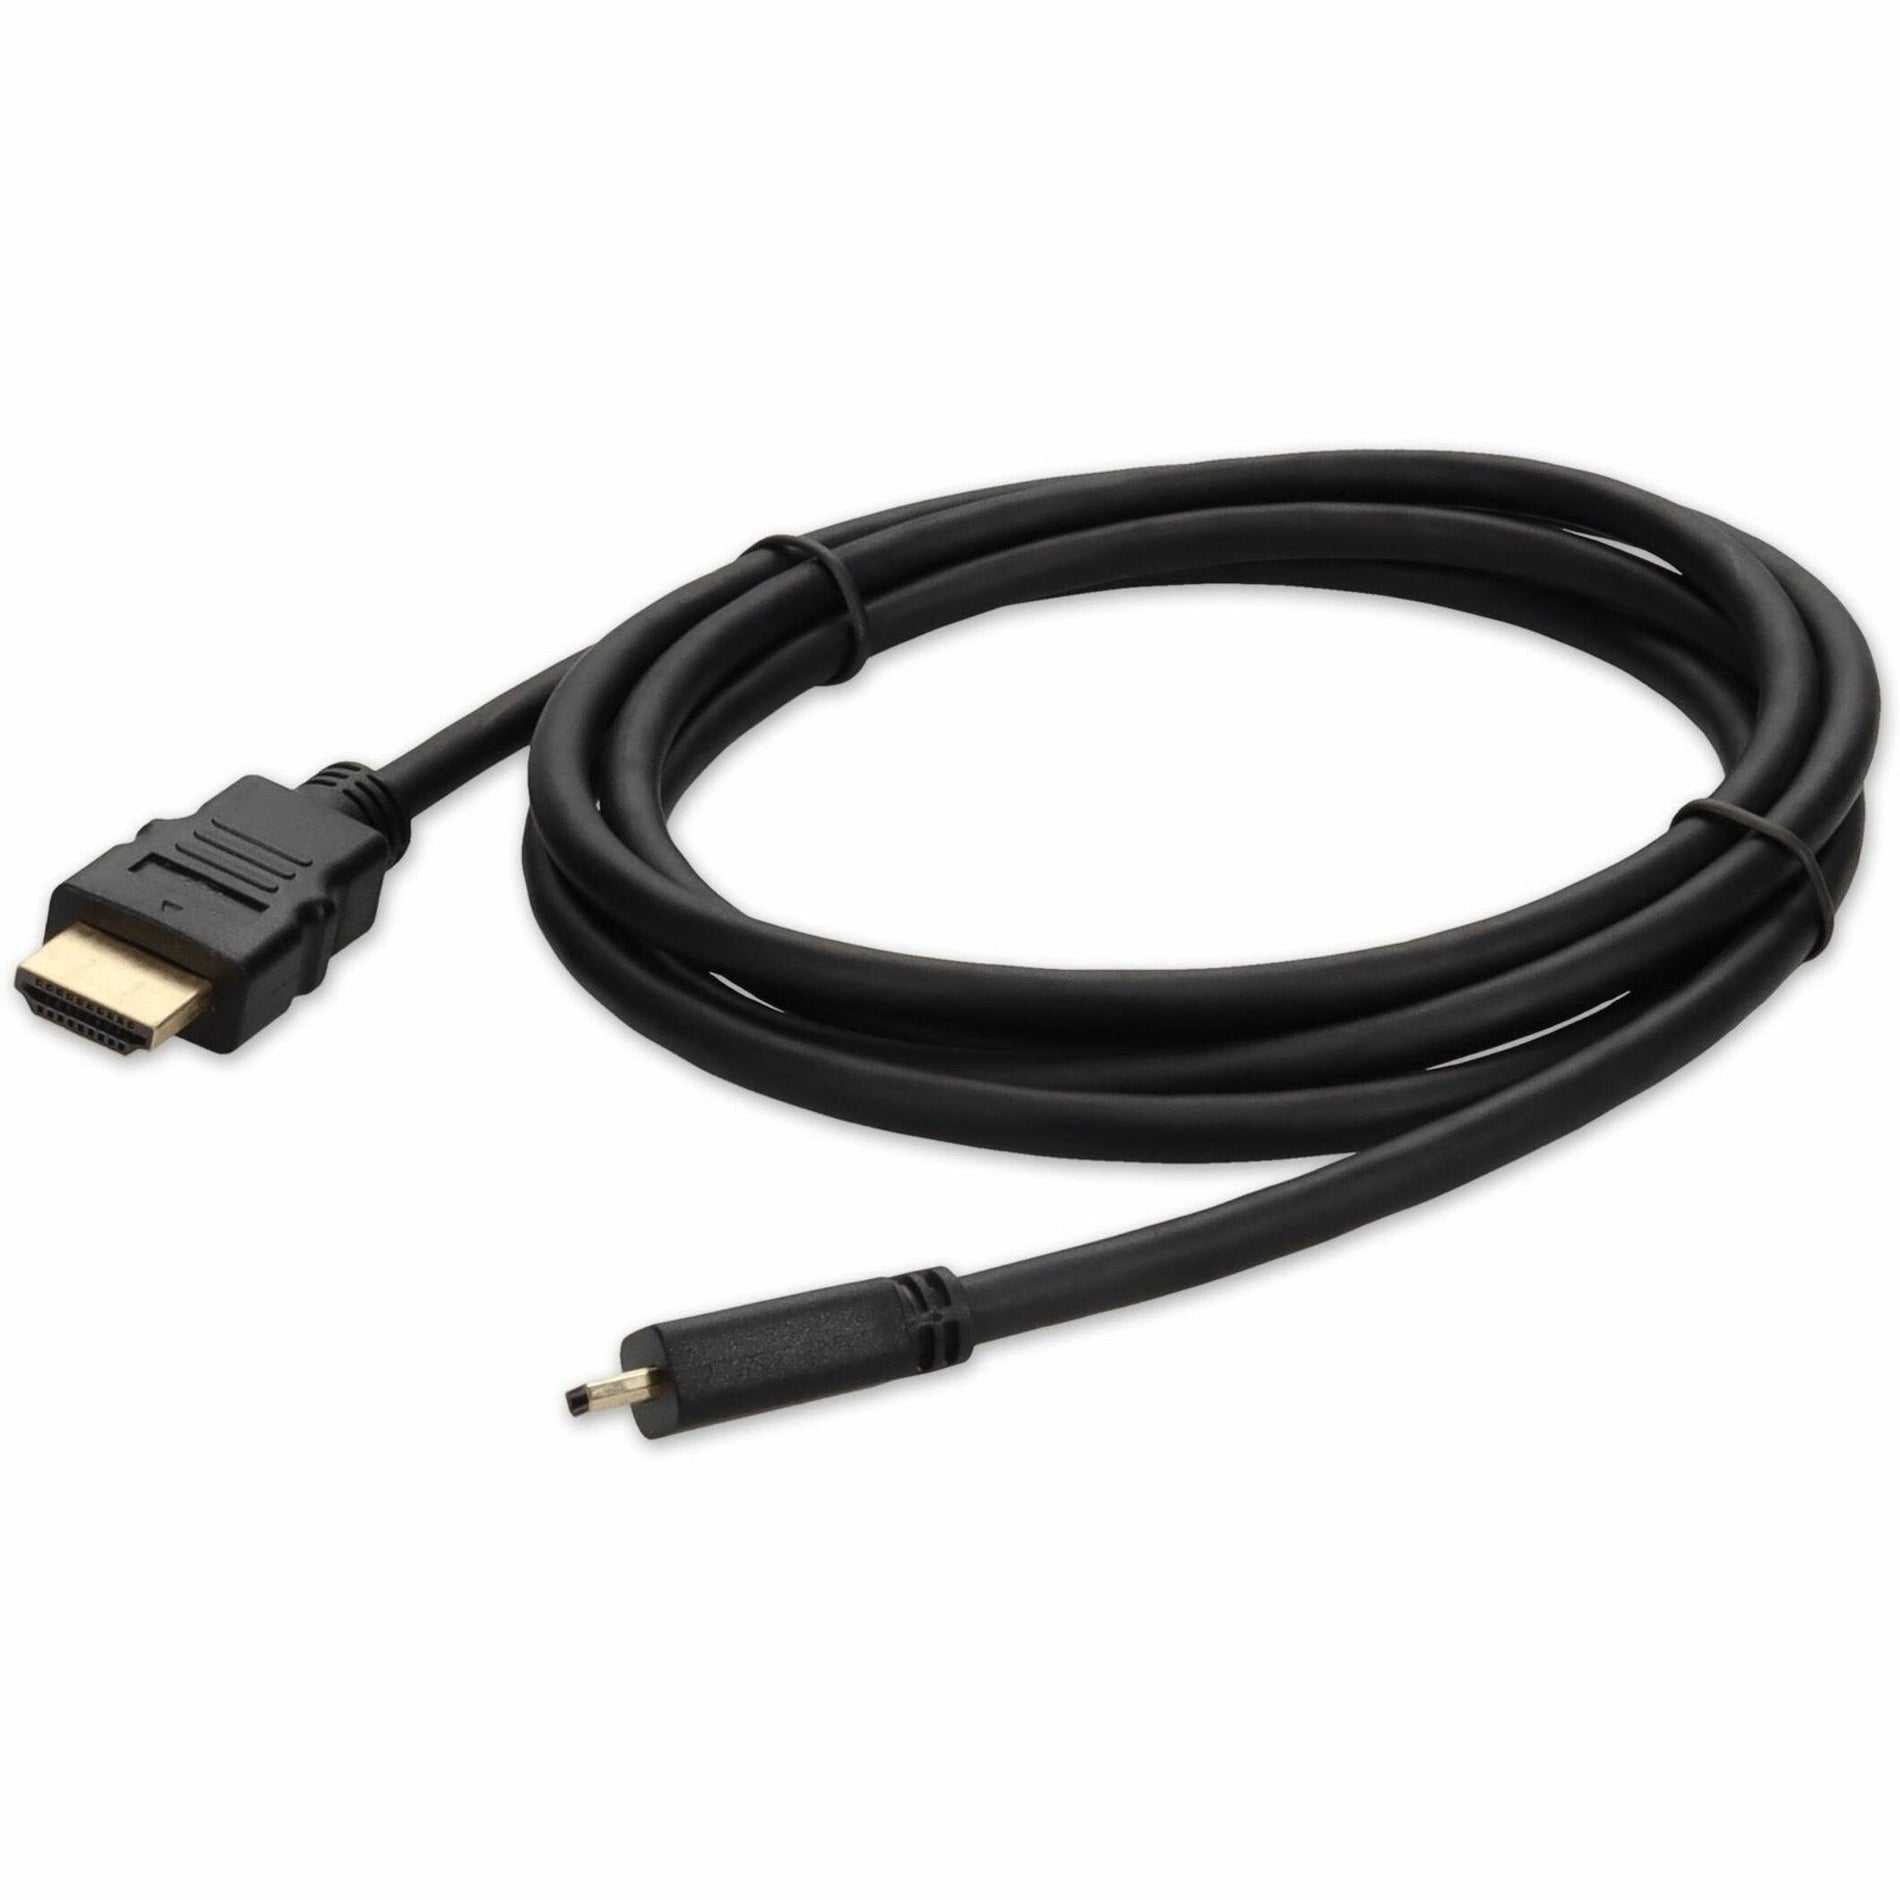 アダプトン HDMI2MHDMI3 3ft (30cm) HDMI to Micro-HDMI アダプターケーブル - メス to メス、銅導体、3 フィート ケーブル長、黒。ブランド名: アドオン。